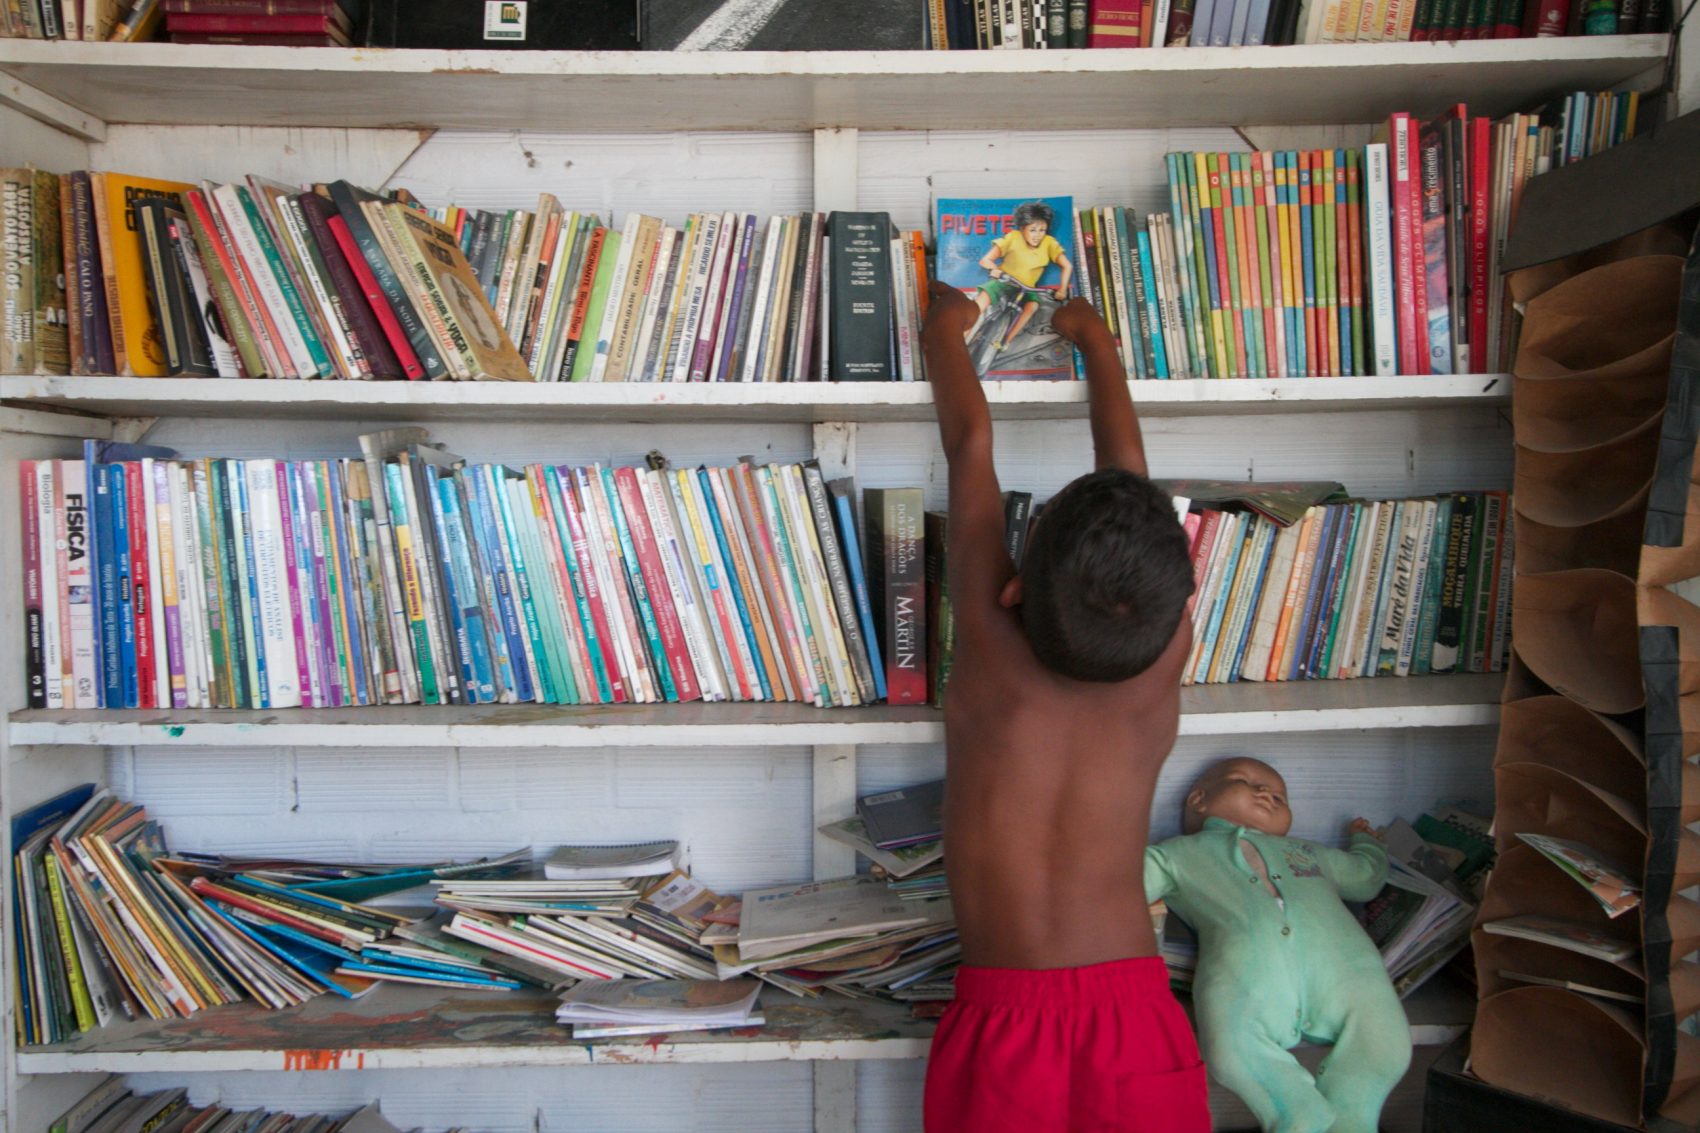 Os esforços que foram feitos nos últimos 25 anos para a formação de leitores em um país onde se lê muito pouco estão sendo jogados fora, diz José Castilho Marques Neto, consultor para as área de livro, bibliotecas e formação de leitores